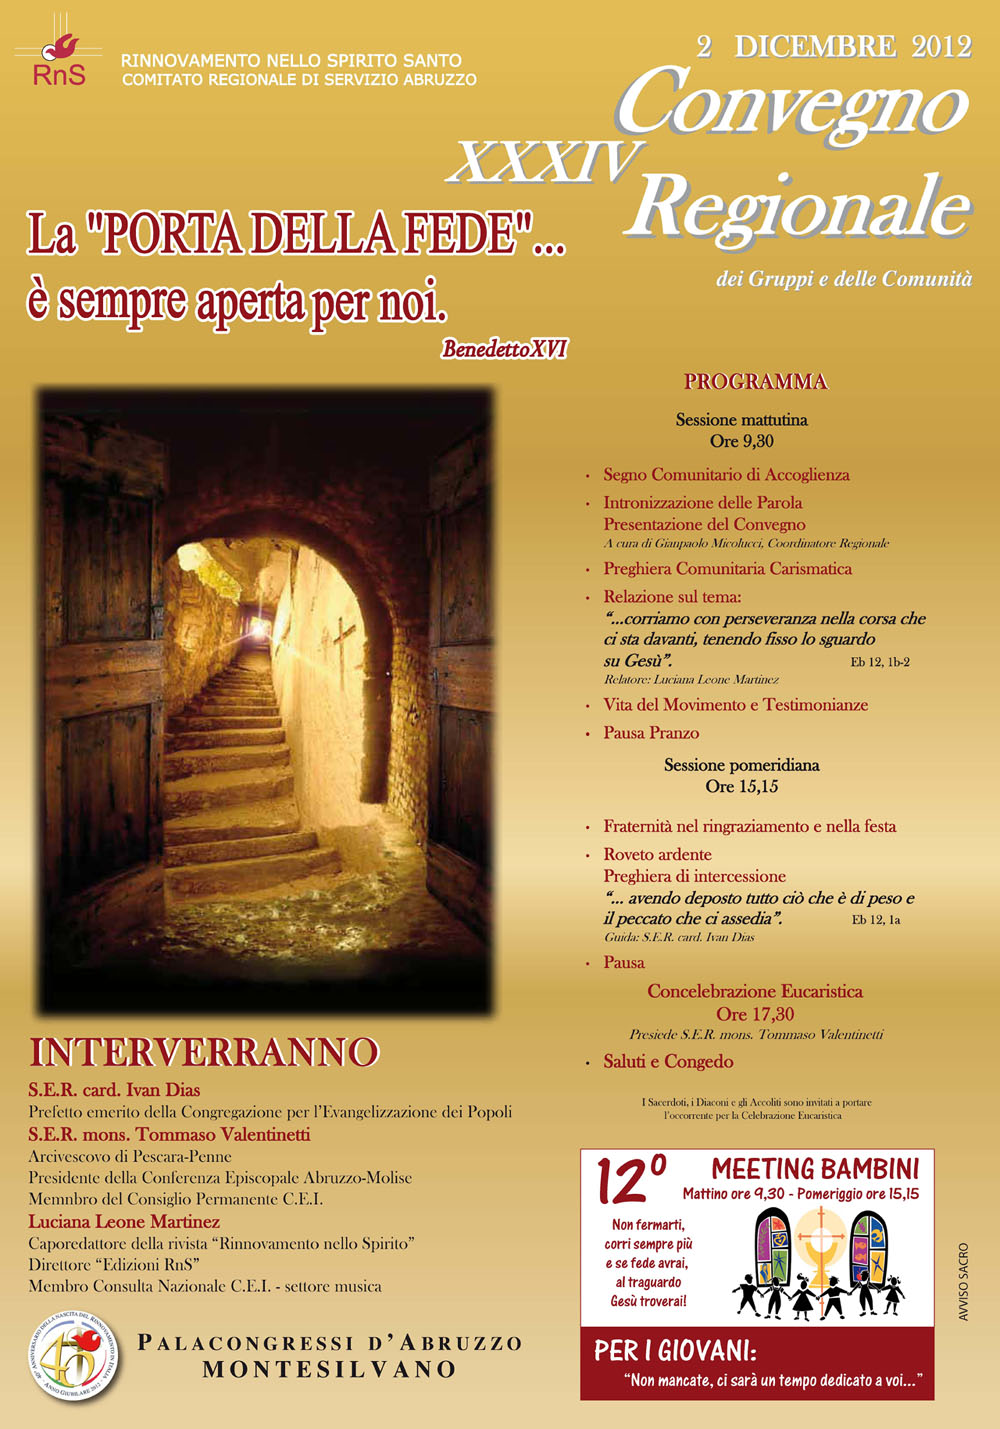 XXXIV Convegno Regionale Abruzzo